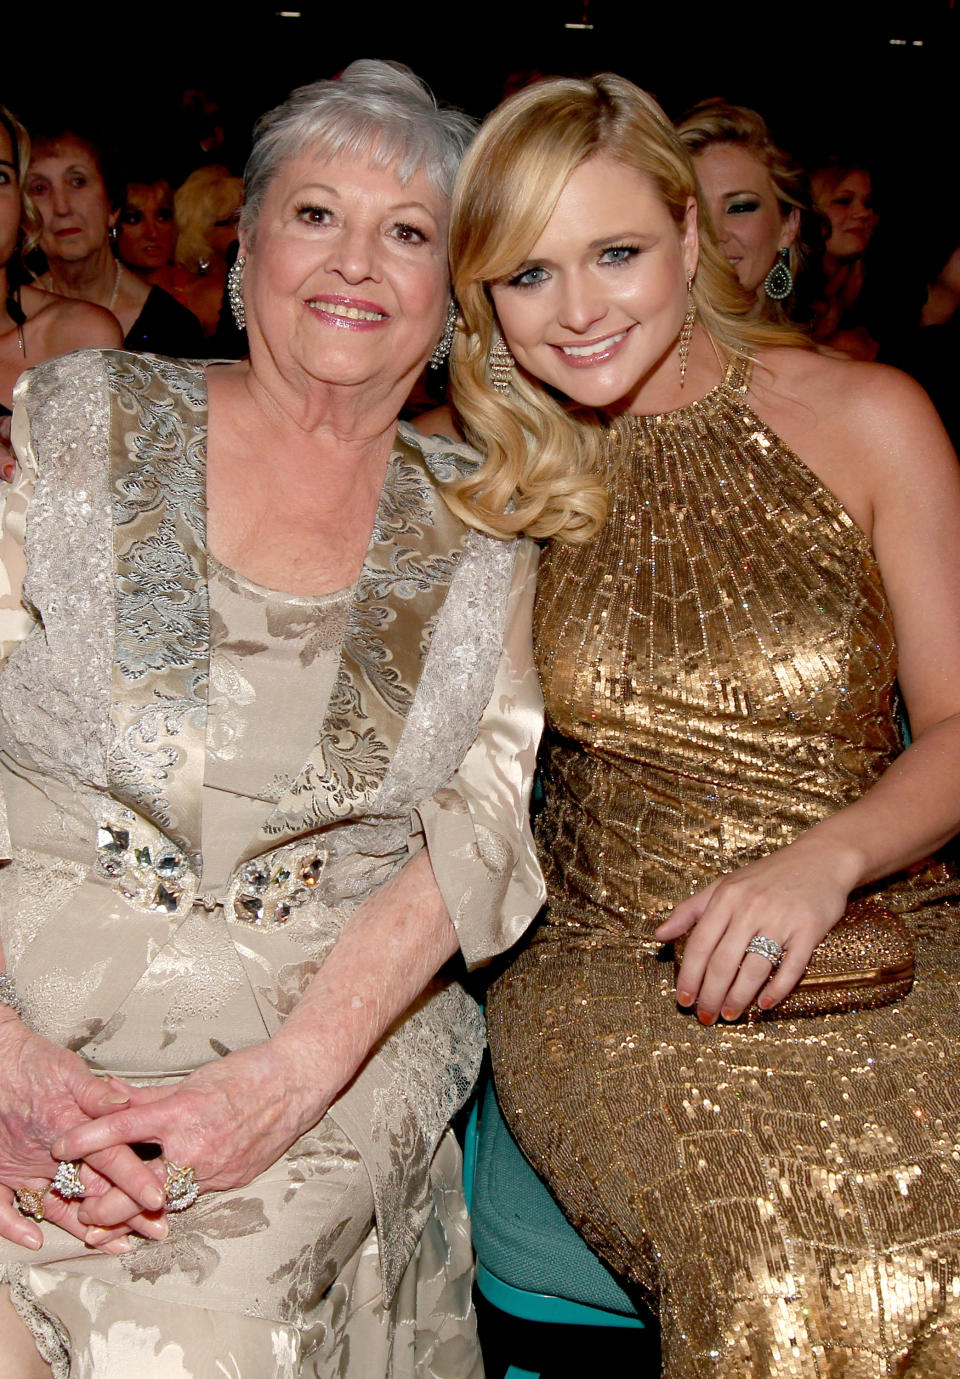 Miranda Lambert with her grandmother Wanda June, aka 